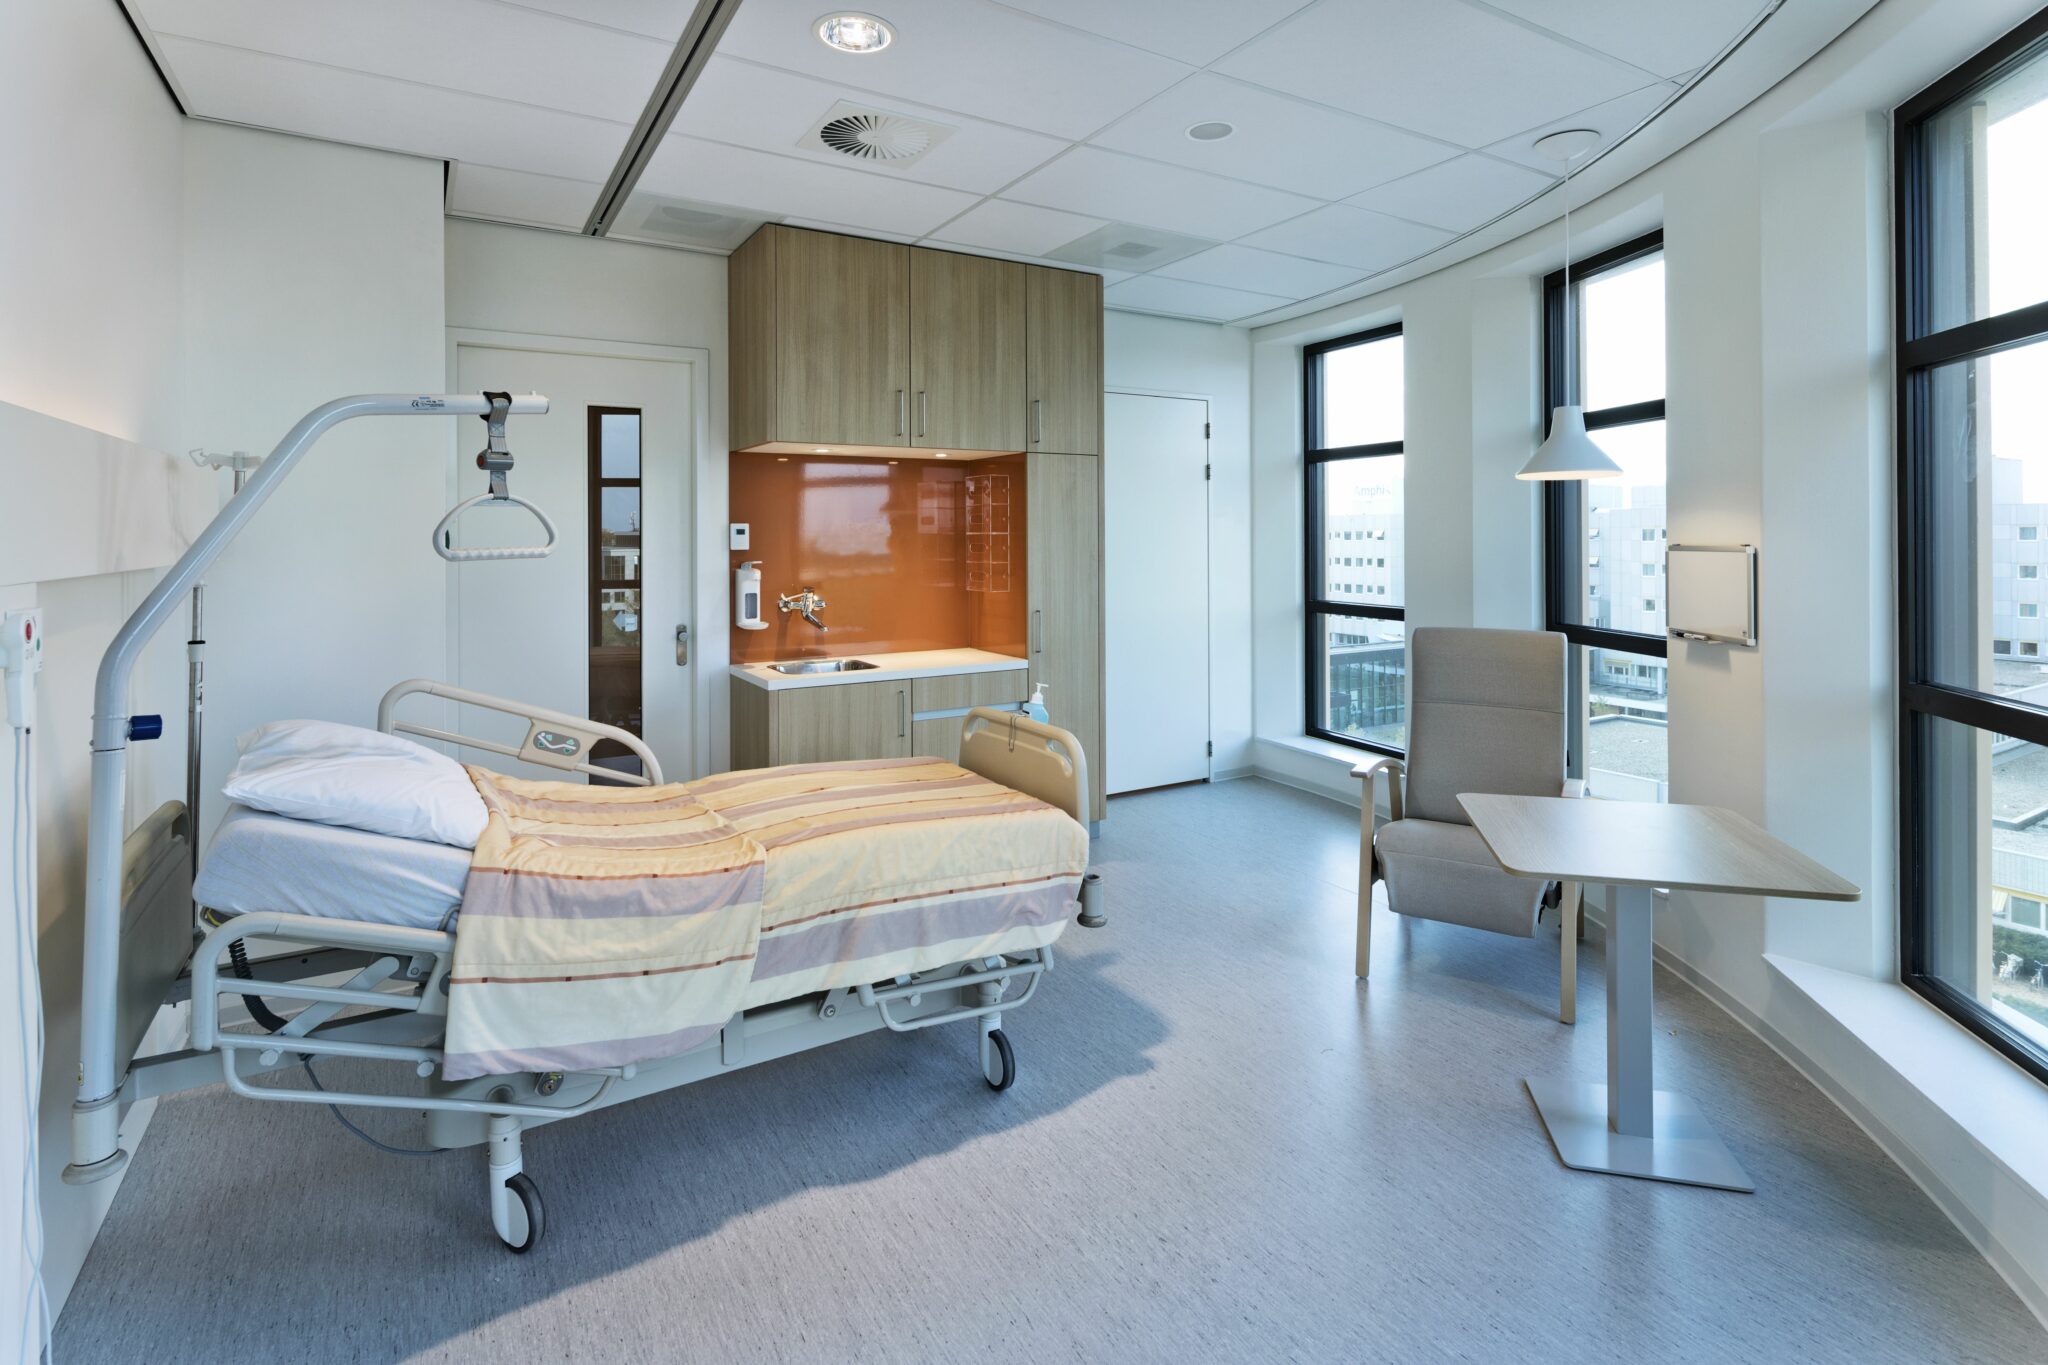 Amphia Ziekenhuis, Breda: Van hightech tot binnentuin